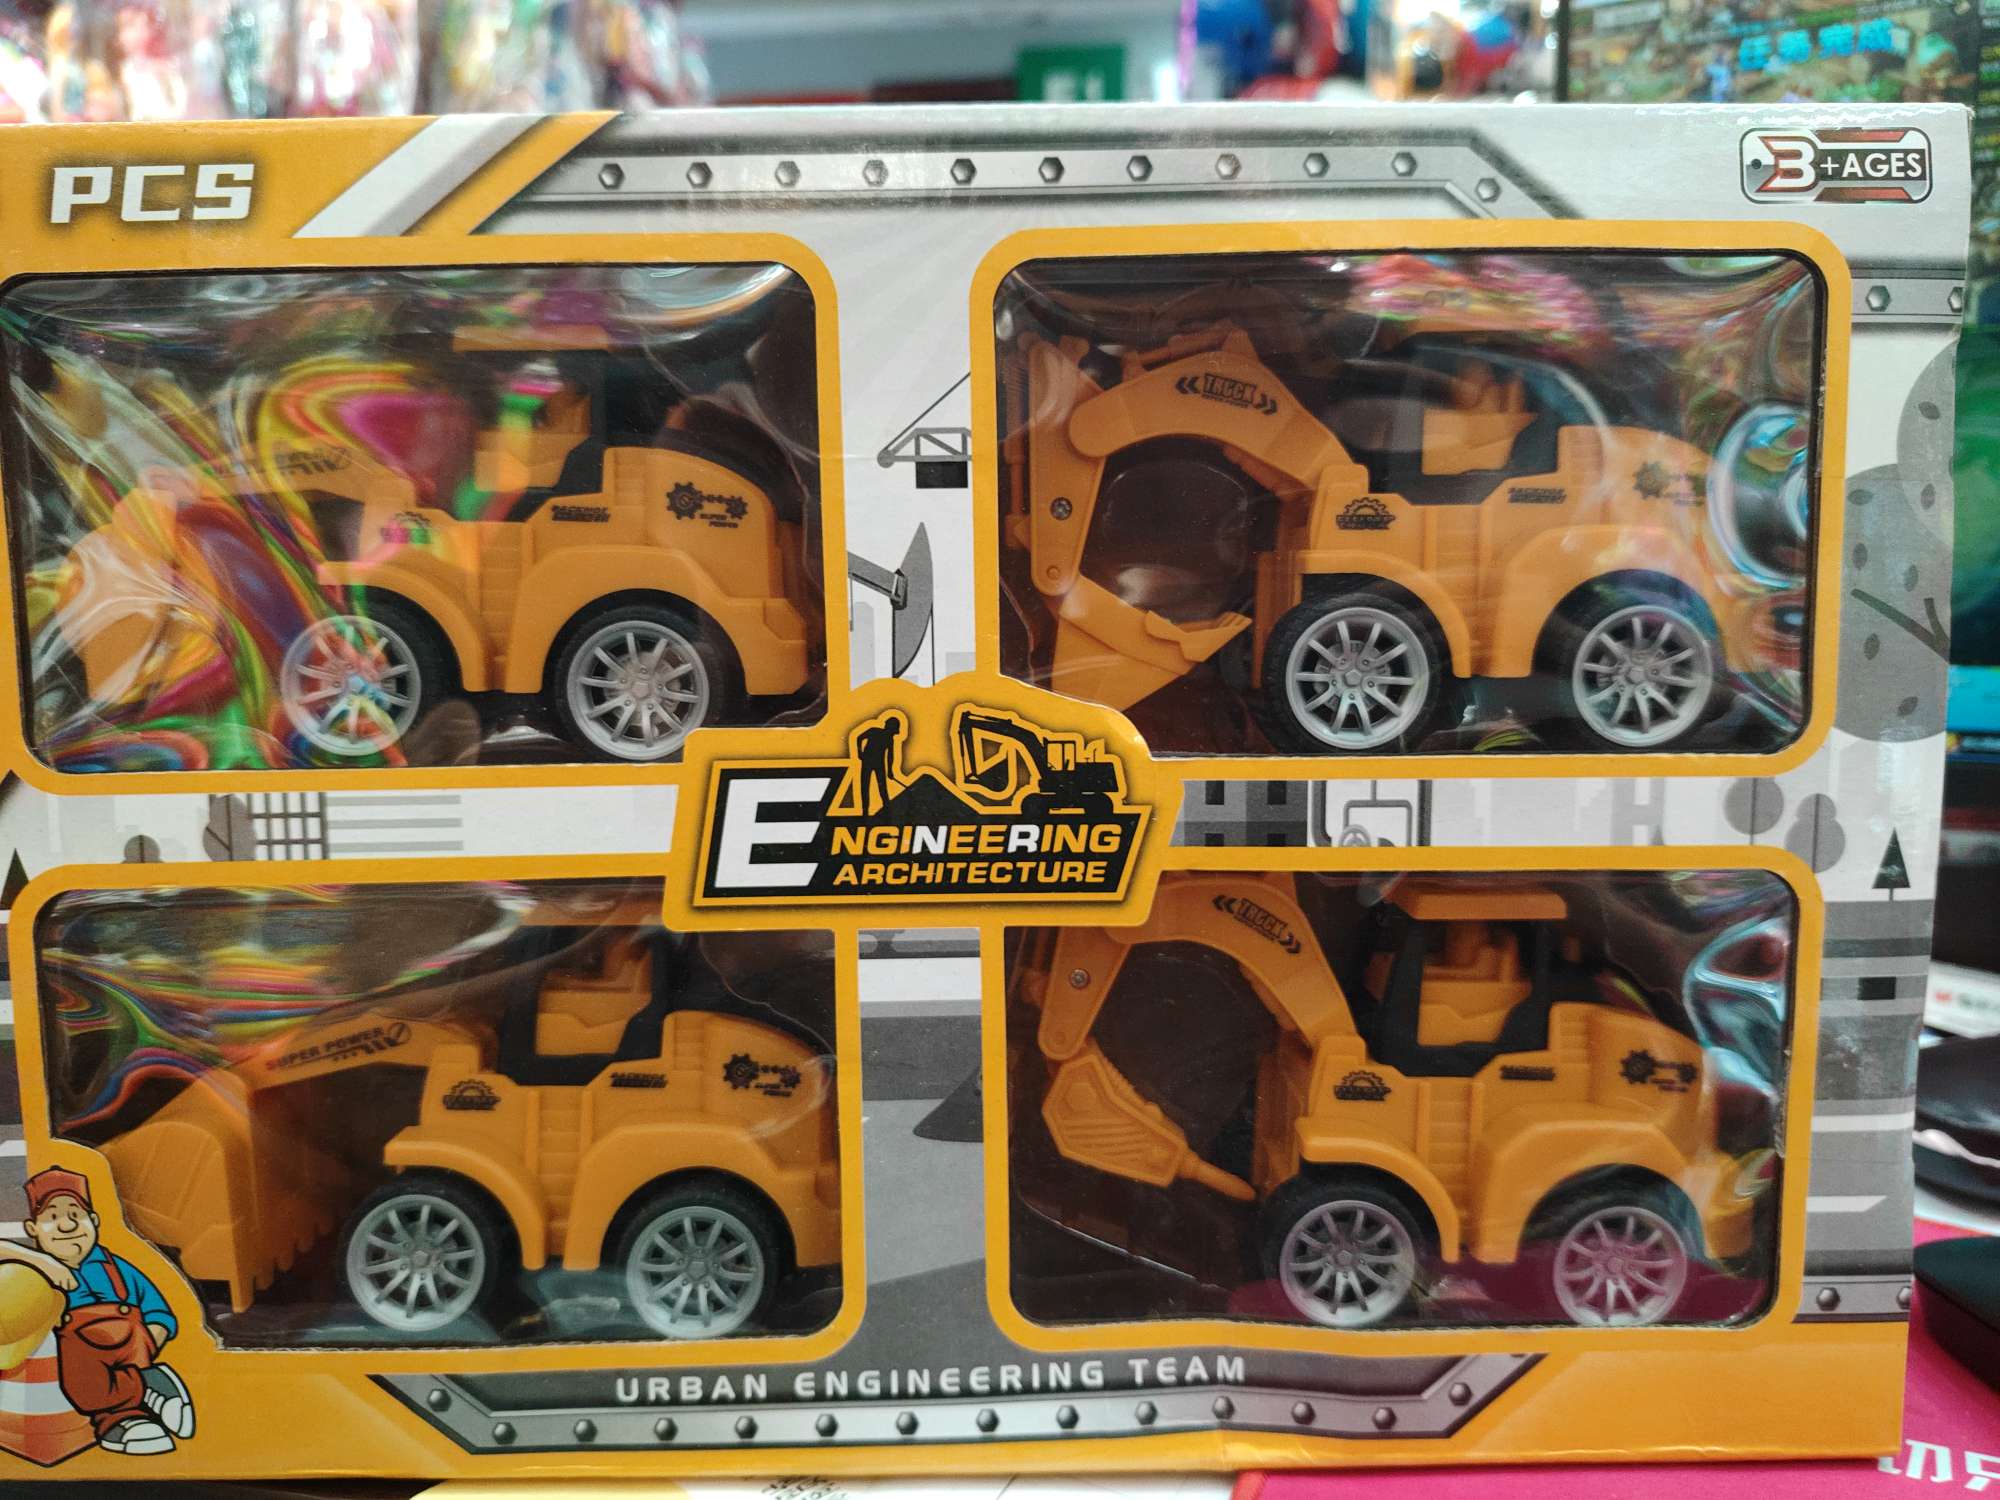 儿童益智玩具工程车小车子套装 盒装礼盒装备 仿真模型车载具套装 安全无毒材质